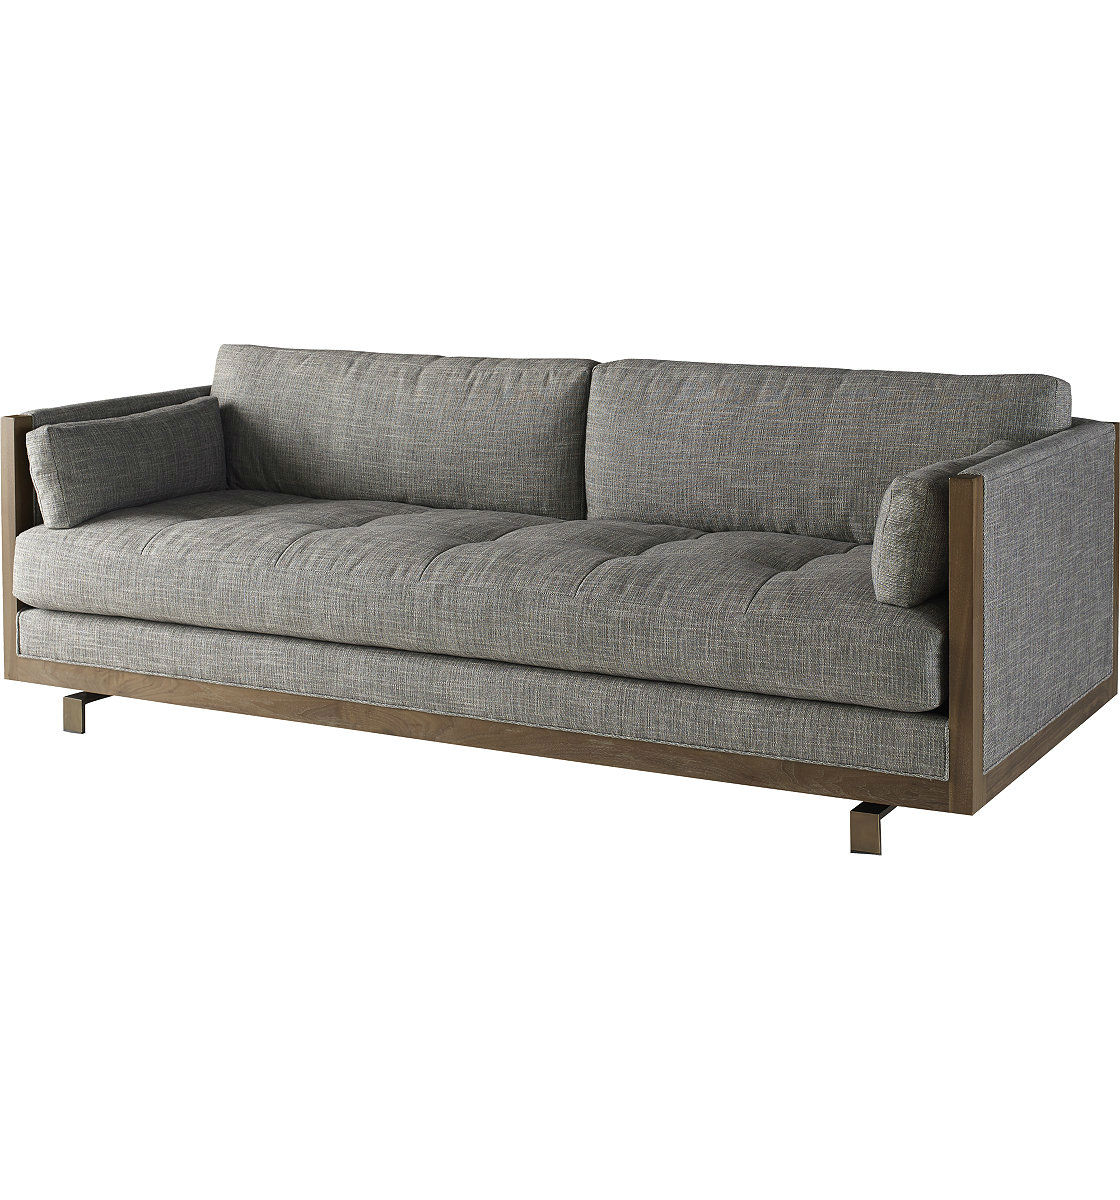 sofa framework